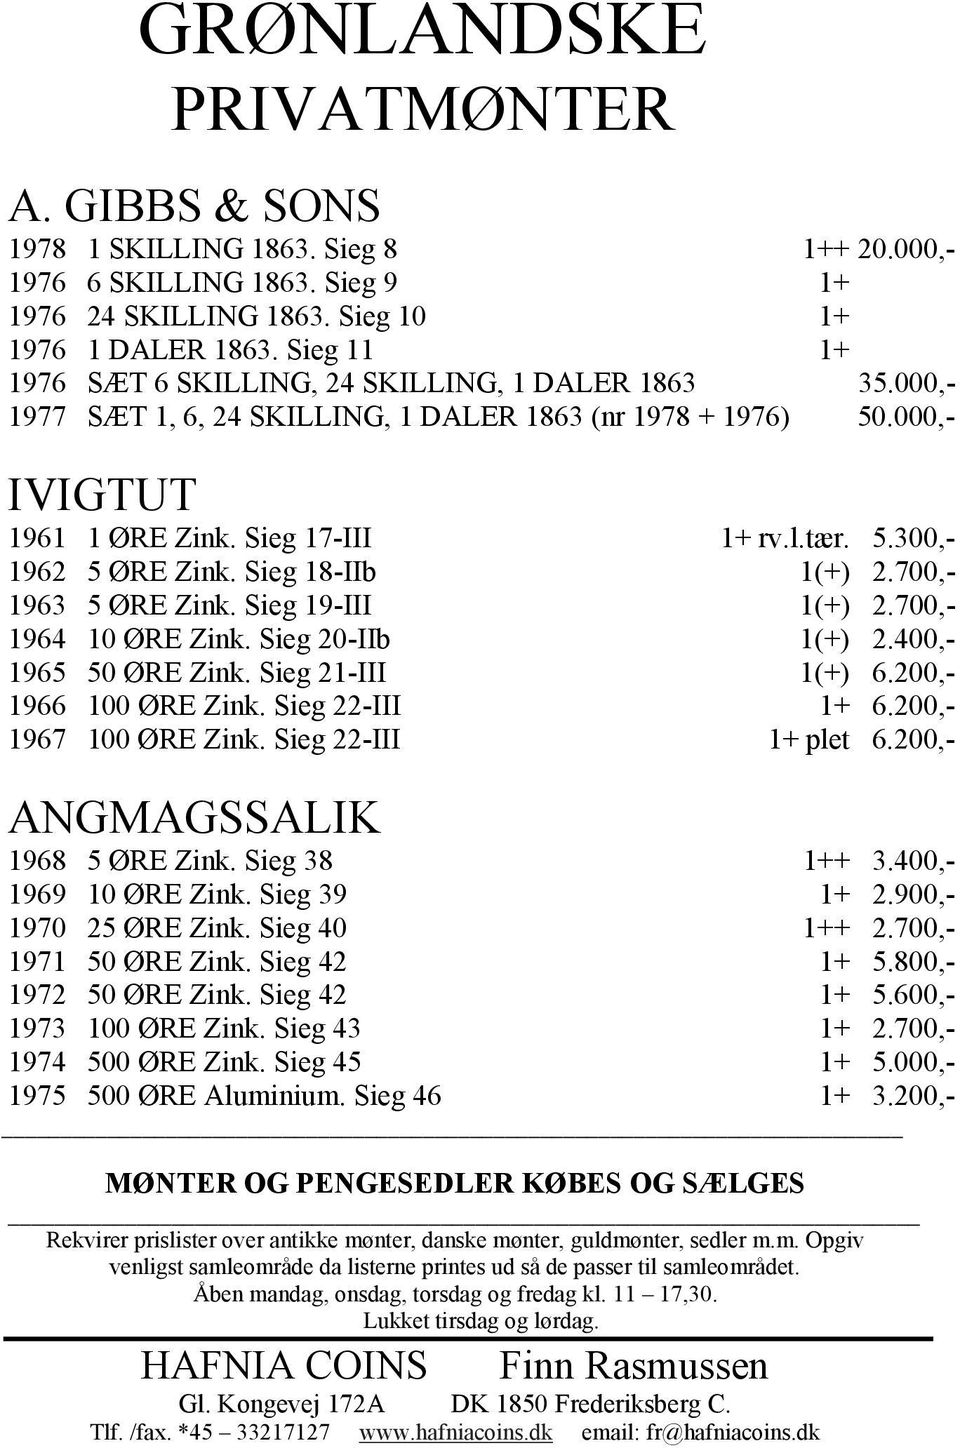 Sieg 18-IIb 1(+) 2.700,- 1963 5 ØRE Zink. Sieg 19-III 1(+) 2.700,- 1964 10 ØRE Zink. Sieg 20-IIb 1(+) 2.400,- 1965 50 ØRE Zink. Sieg 21-III 1(+) 6.200,- 1966 100 ØRE Zink. Sieg 22-III 1+ 6.